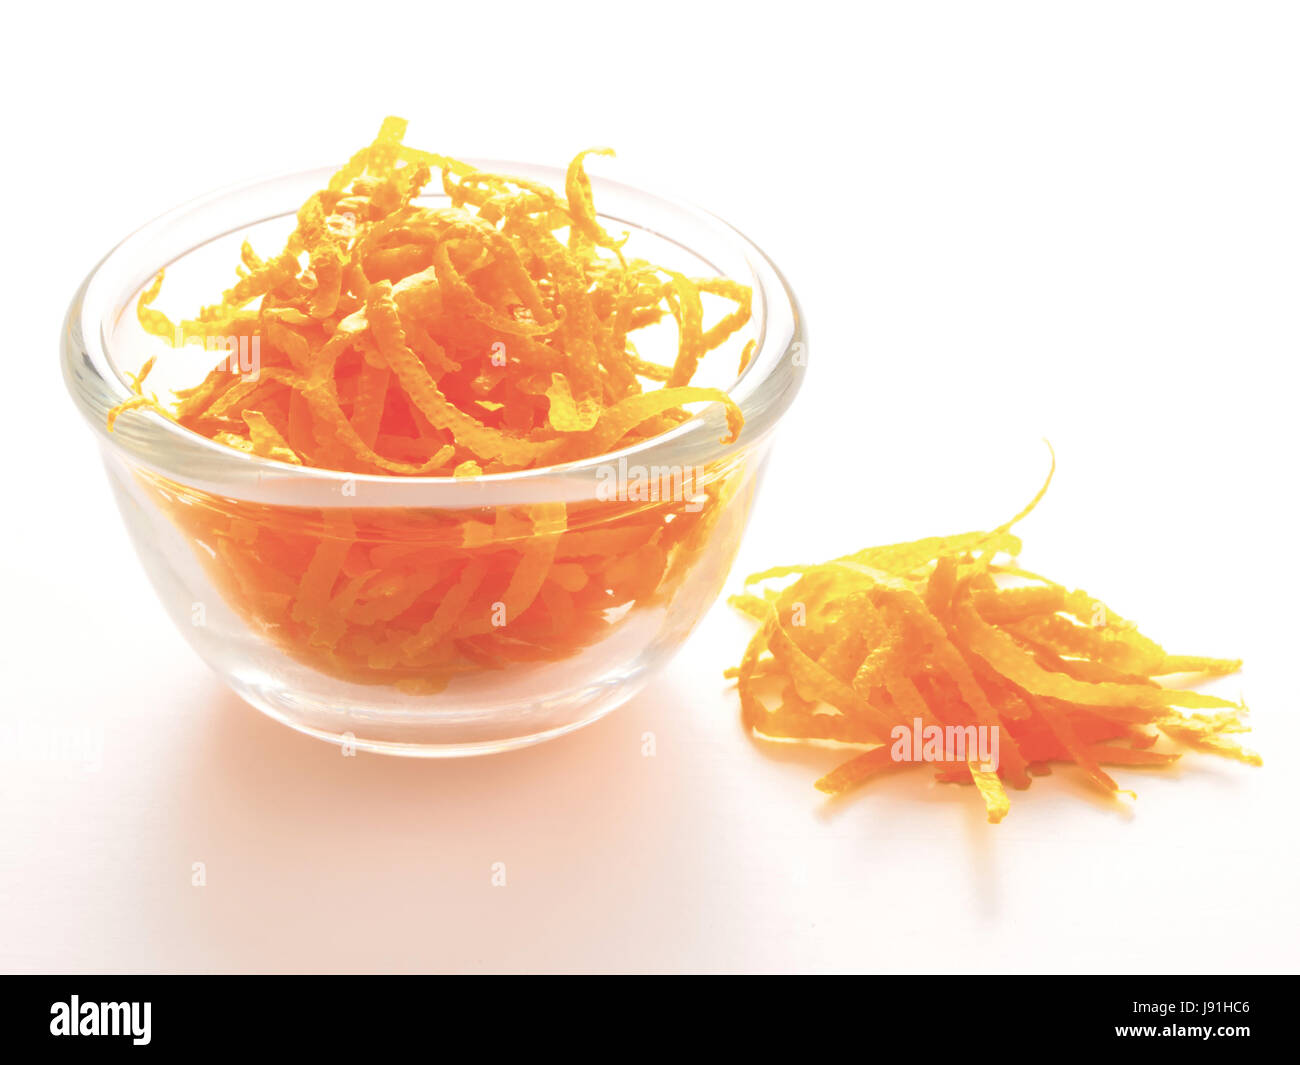 aromatic, orange, flavor, rind, ingredient, citrus, fresh, colour, closeup, Stock Photo